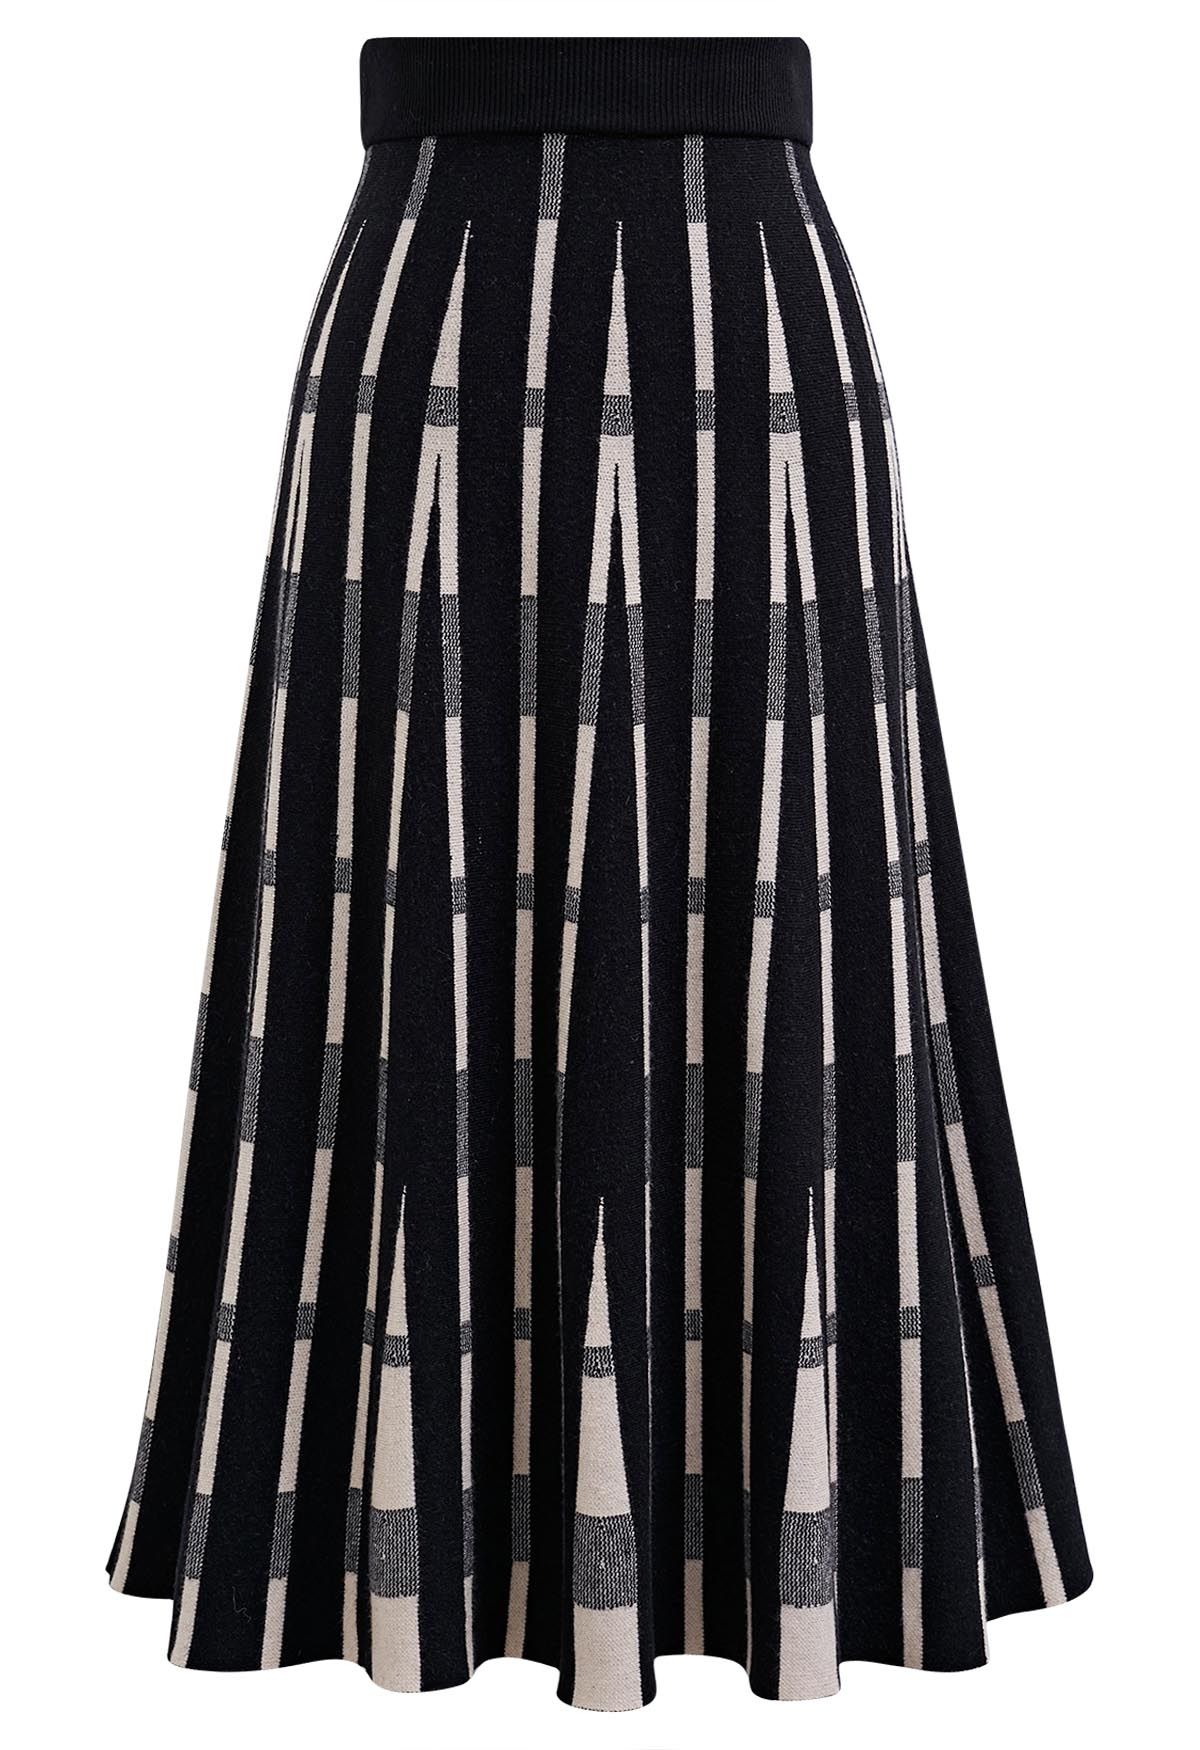 Falda midi de punto a rayas que marca tendencia en negro